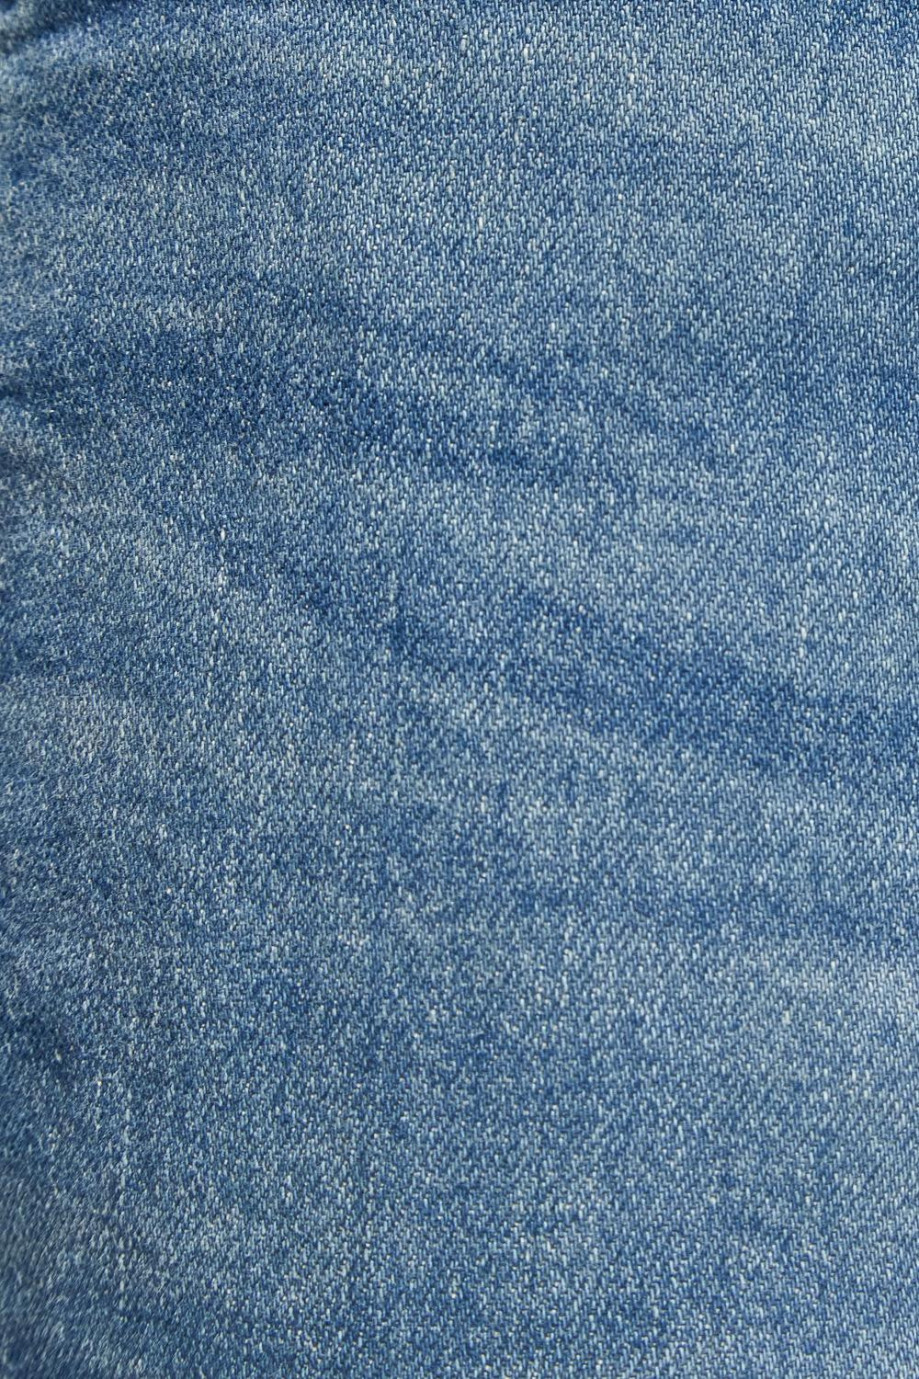 Jean skinny azul claro tiro bajo con botón metálico en la cintura